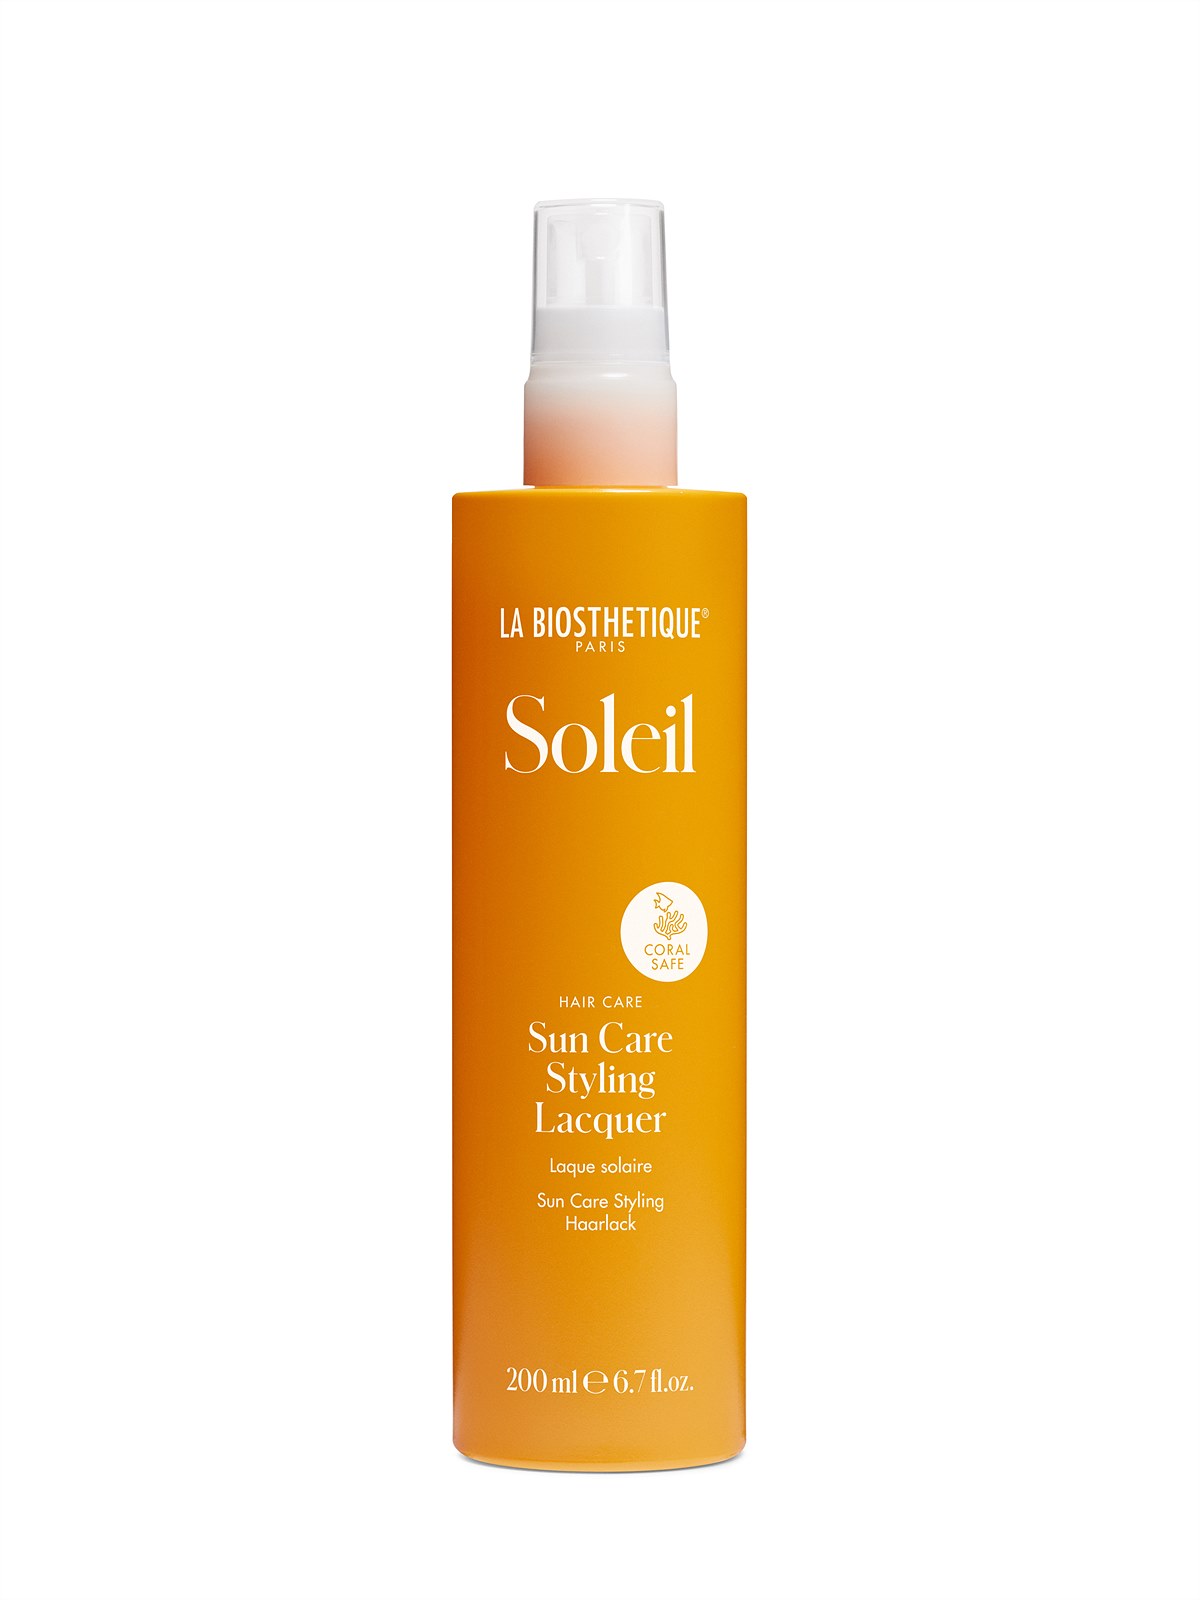 La Biosthétique_Hair-Soleil-Sun-Care-Styling-Lacquer-200ml_EUR 22,50